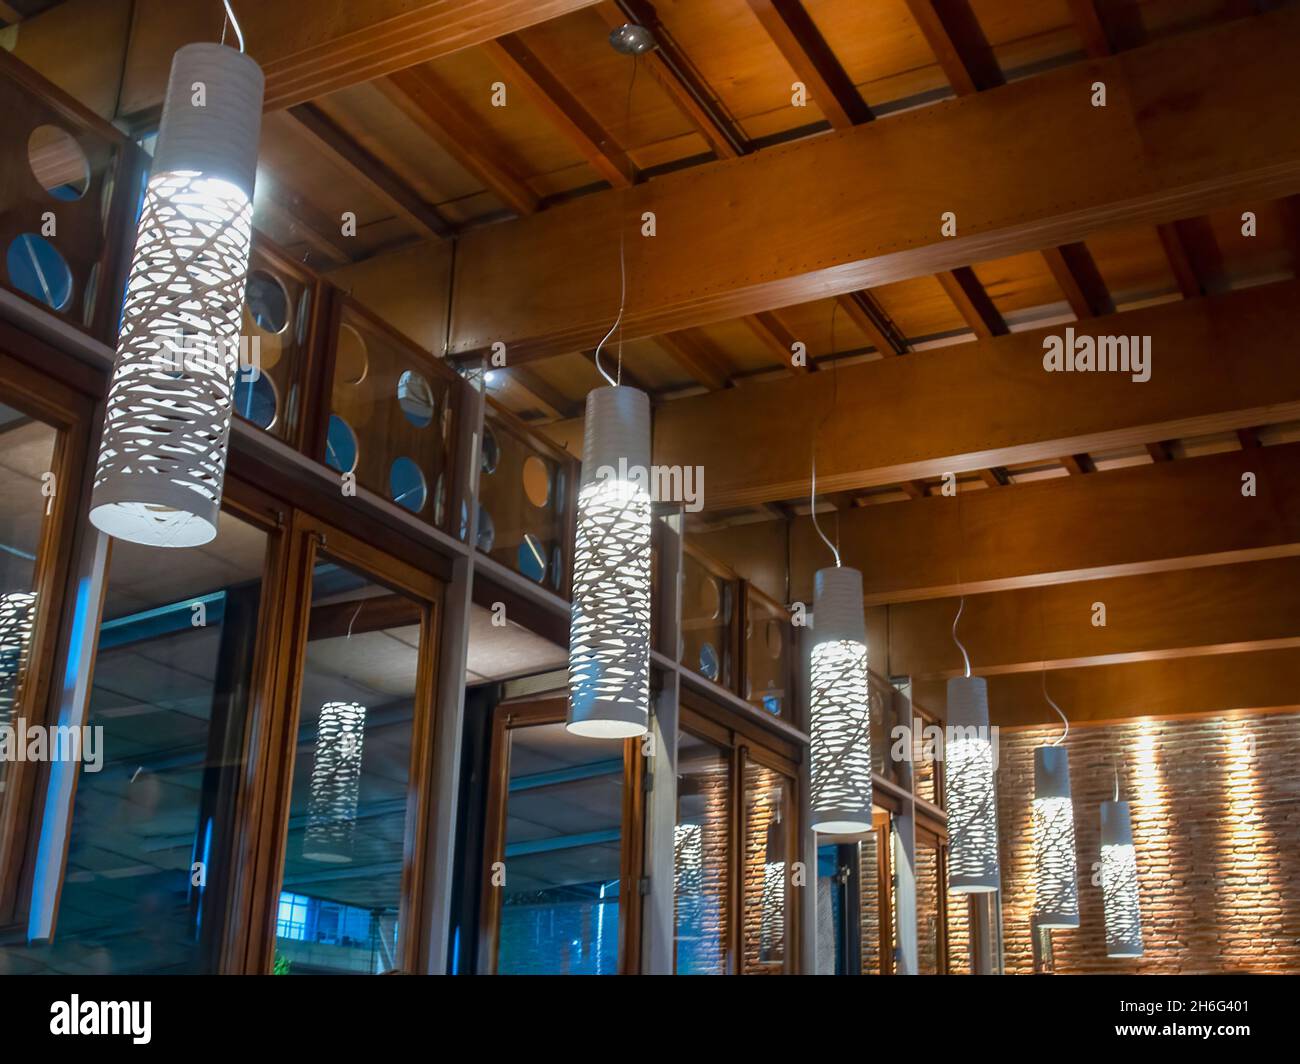 Dekoration hanging lantern Lampen in Holz- wicker aus Bambus. Künstliche  Lampen hängen an Holzbalken. schöne Laterne, Lampe aufhängen an der Decke.  Kopieren Sie Platz für Text. Retro Style Stockfotografie - Alamy